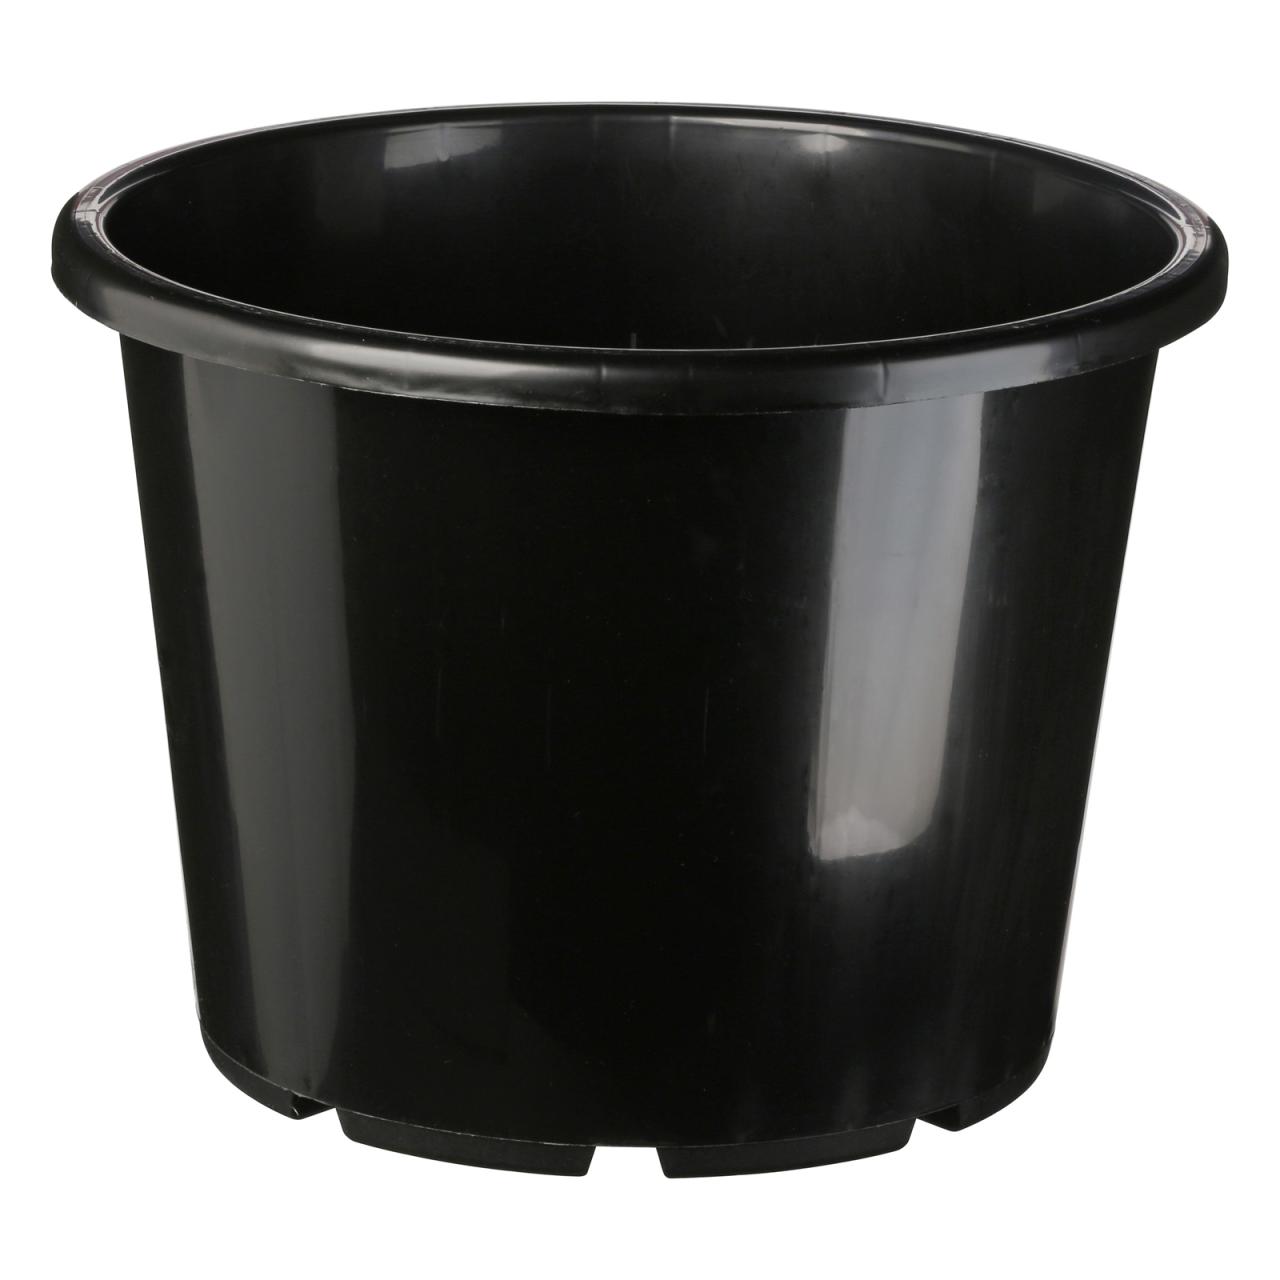 Hanging Plants Indoor | Black Plastic Pot Bunnings: A Versatile and Durable Gardening Essential